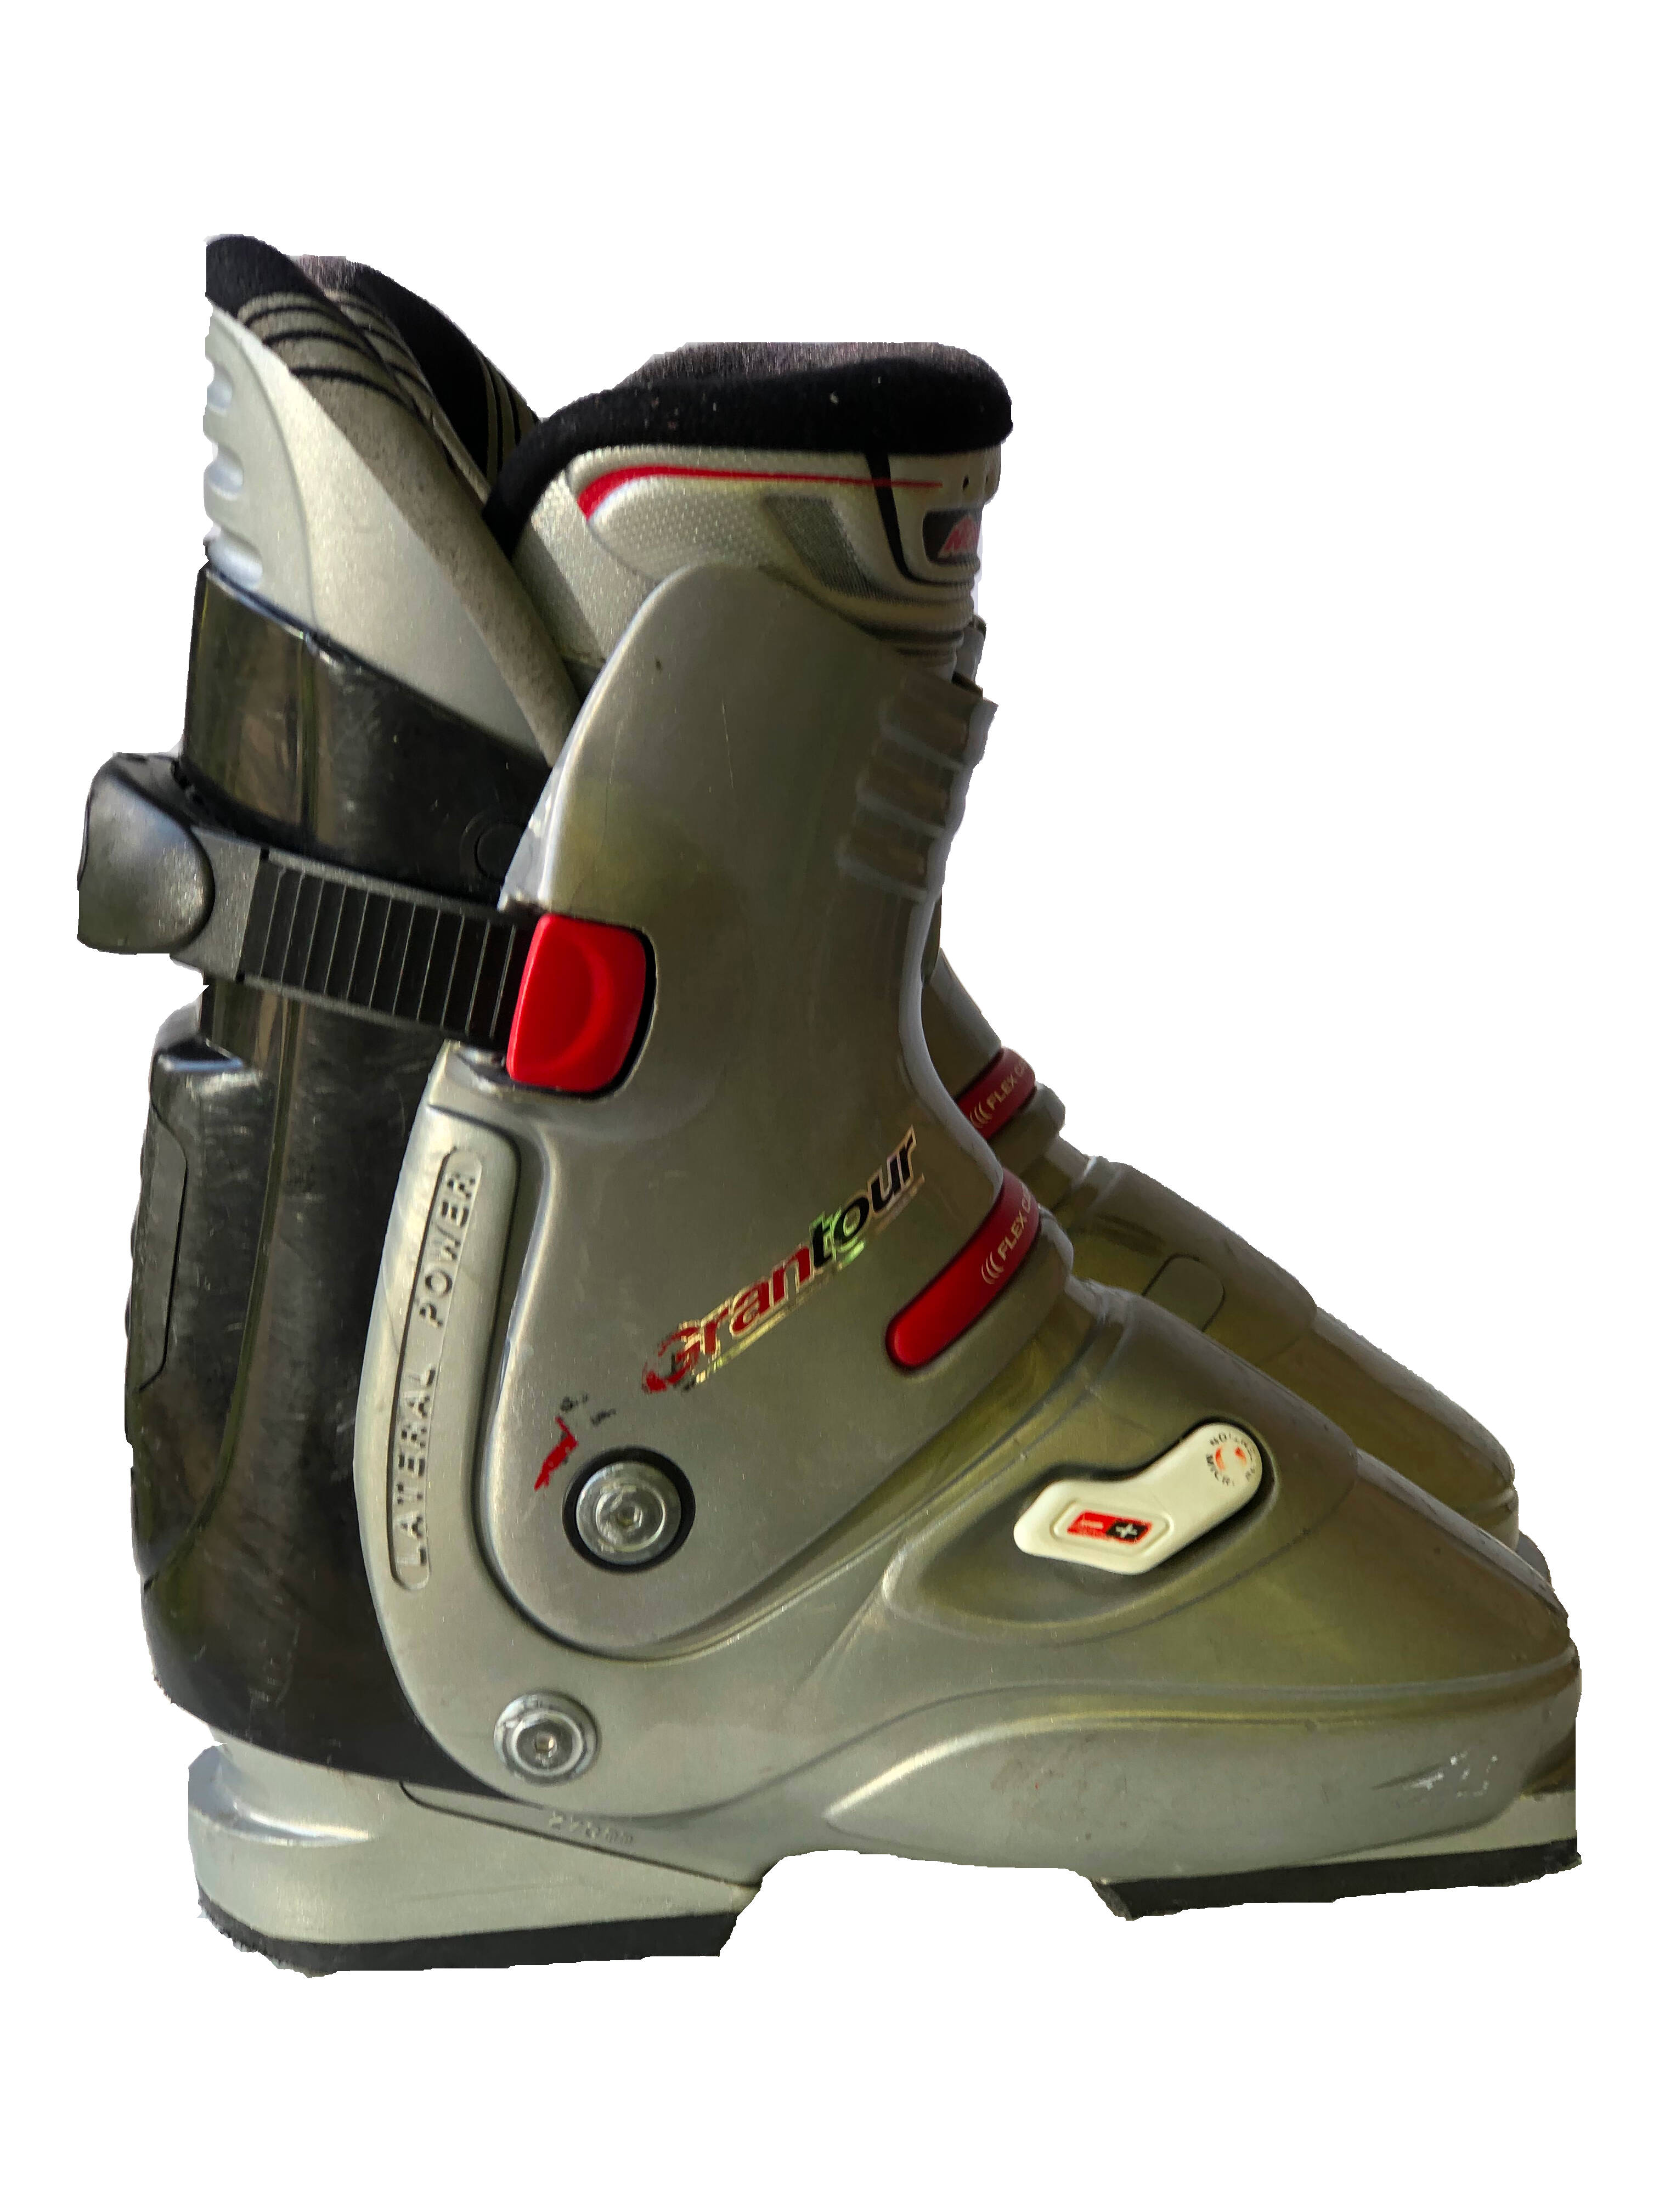 Używane buty narciarskie Nordica 26/301mm rozmiar 40 :: Sklep Sportowy -  outlet sportowy, koncówki kolekcji, wyprzedaże, narty, deski, wiązania,  sprzet narciarski, buty sportowe